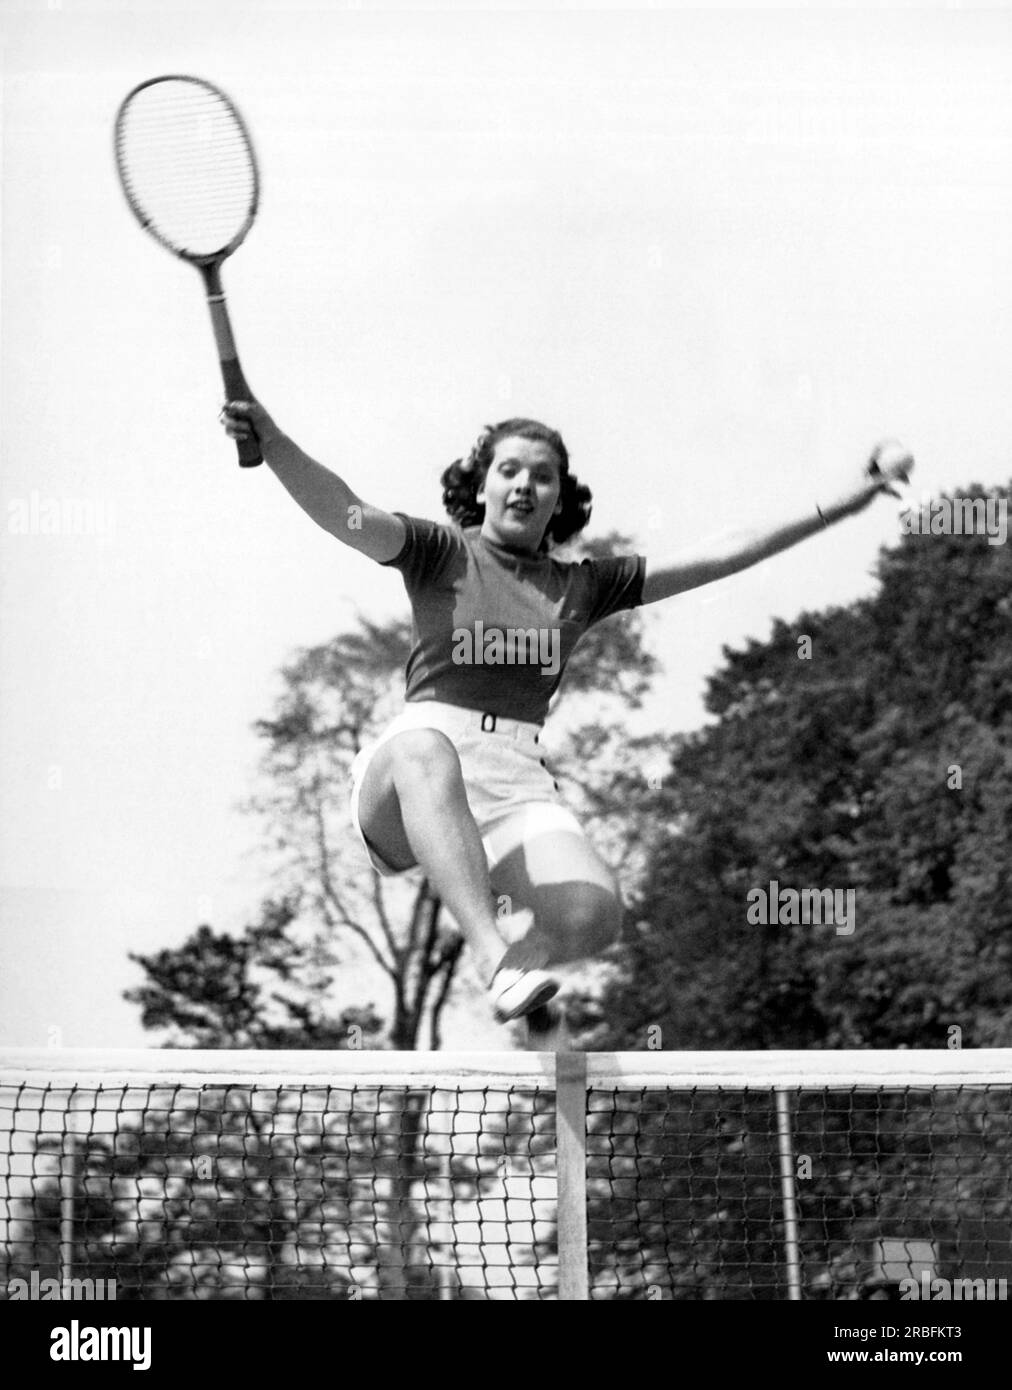 Westport, Connecticut : 23 mai 1936 la femme de 18 ans sautant sur le filet de tennis a été nommée «athlète américaine typique» par le comité athlétique du Longshore Club à Westport. Banque D'Images